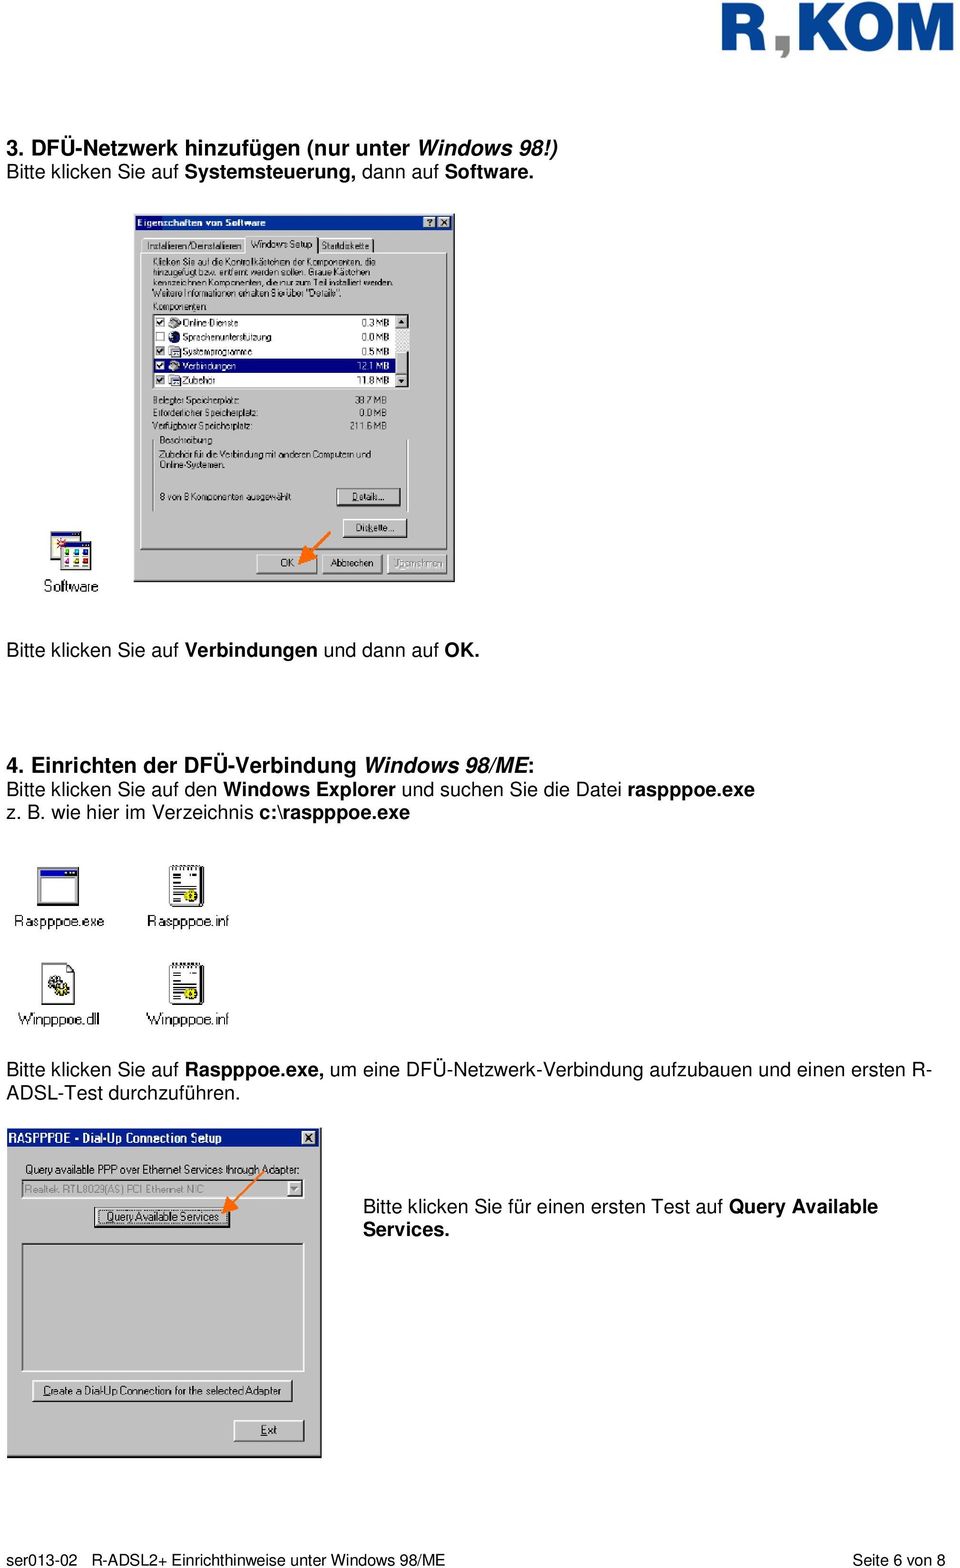 Einrichten der DFÜ-Verbindung Windows 98/ME: Bitte klicken Sie auf den Windows Explorer und suchen Sie die Datei raspppoe.exe z. B. wie hier im Verzeichnis c:\raspppoe.